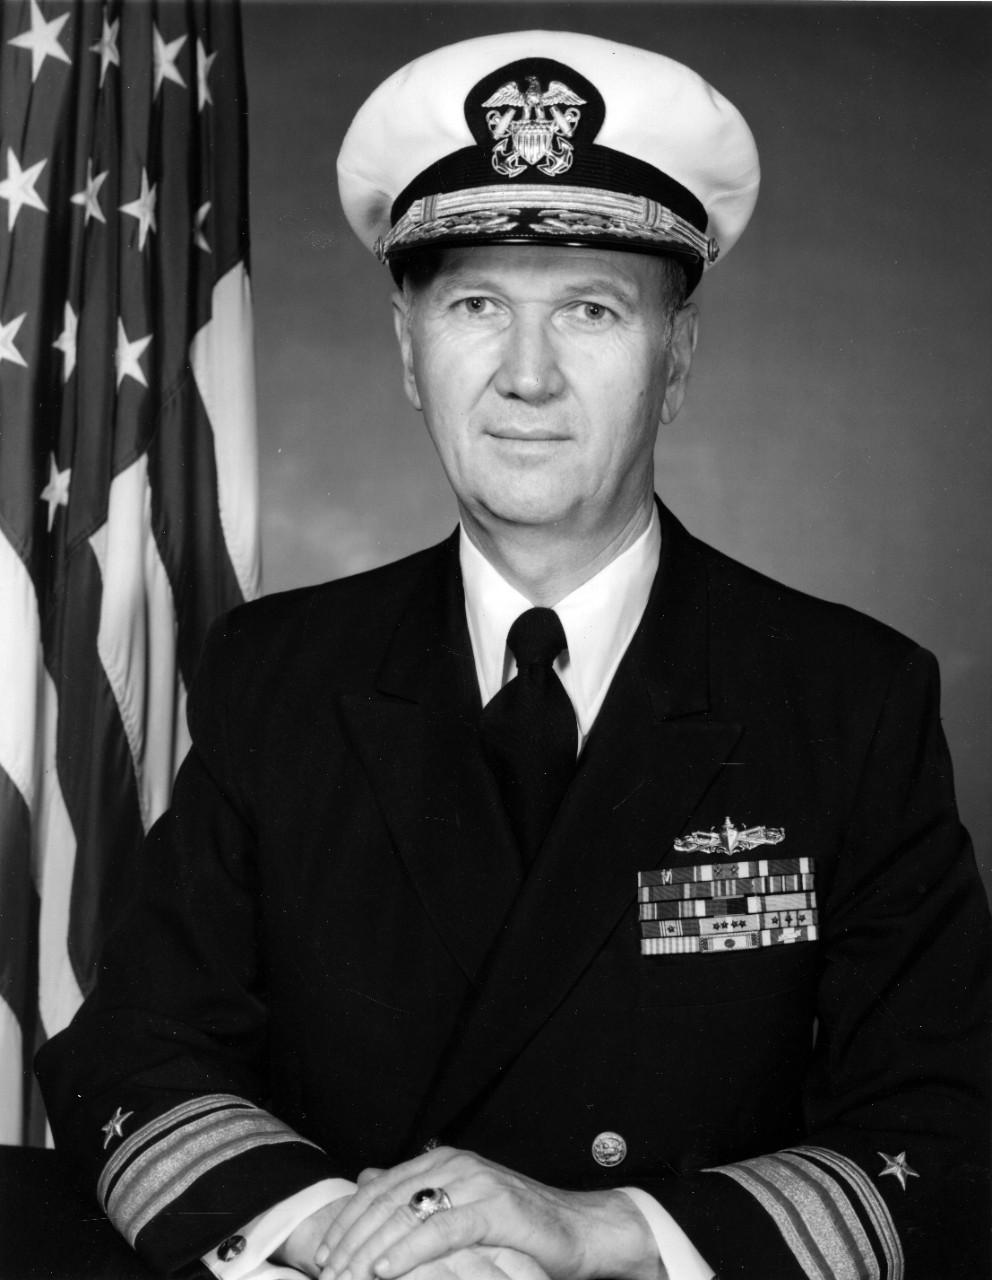 Rear Admiral Bruce Keener III, USN